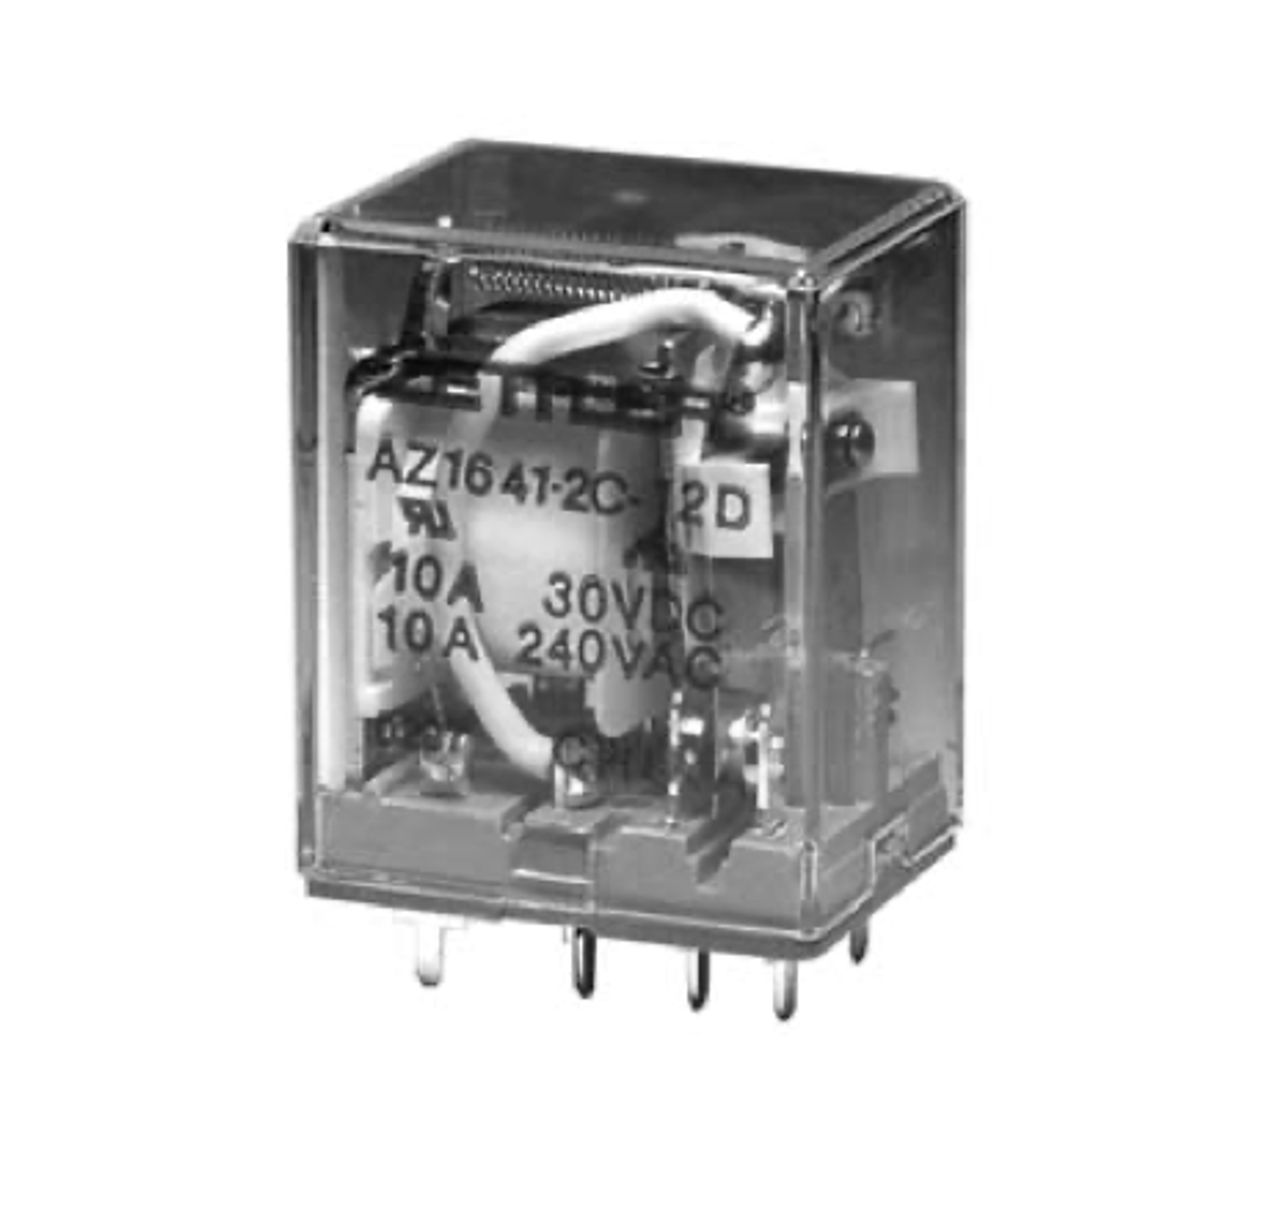 American Zettler AZ1641-4C-24A Power Relay